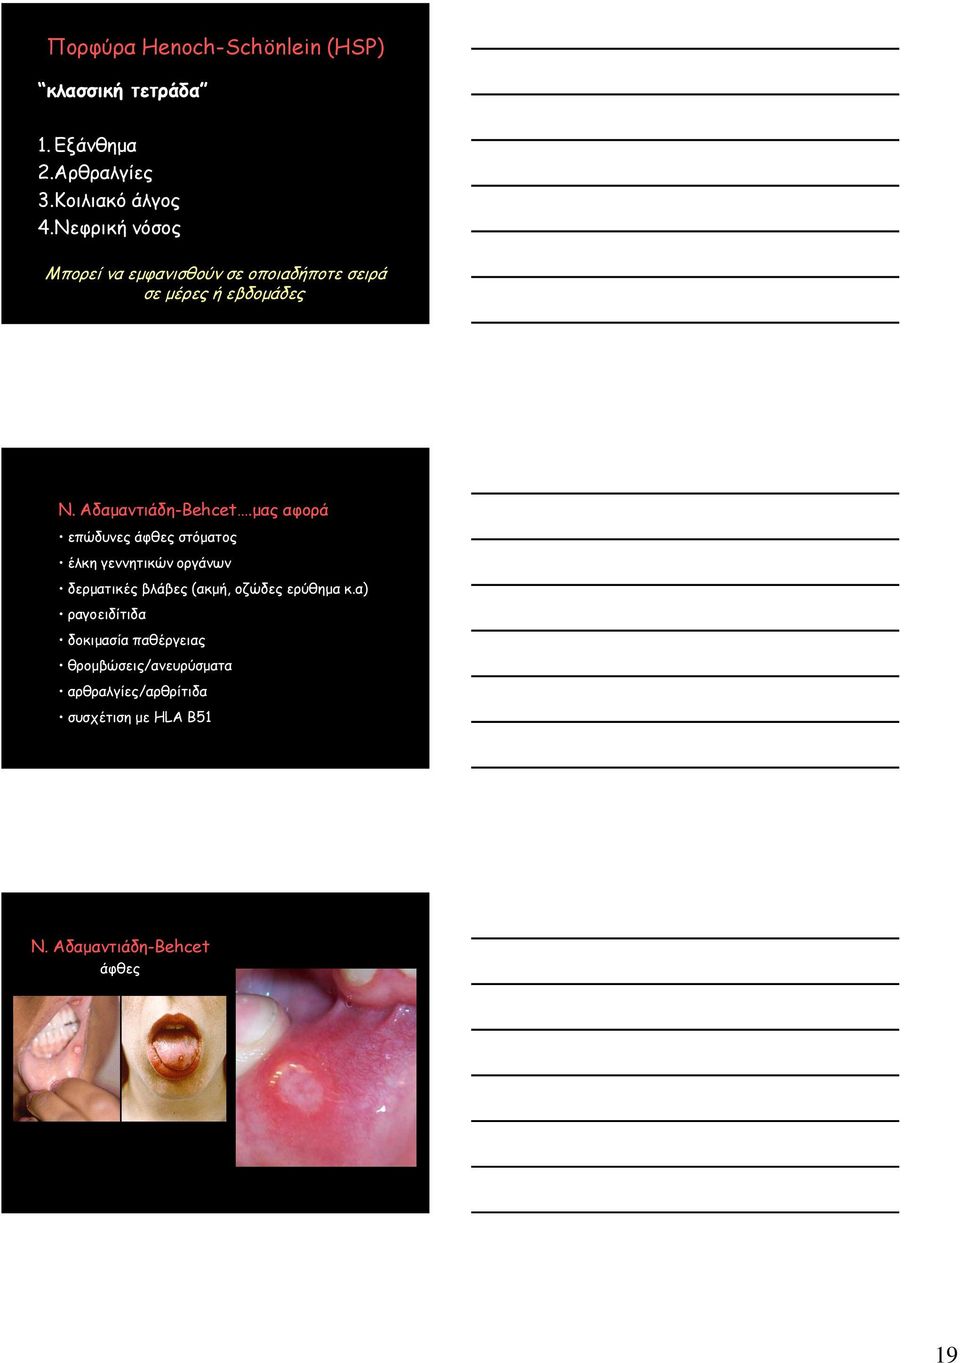 μας αφορά επώδυνες άφθες στόματος έλκη γεννητικών οργάνων δερματικές βλάβες (ακμή, οζώδες ερύθημα κ.